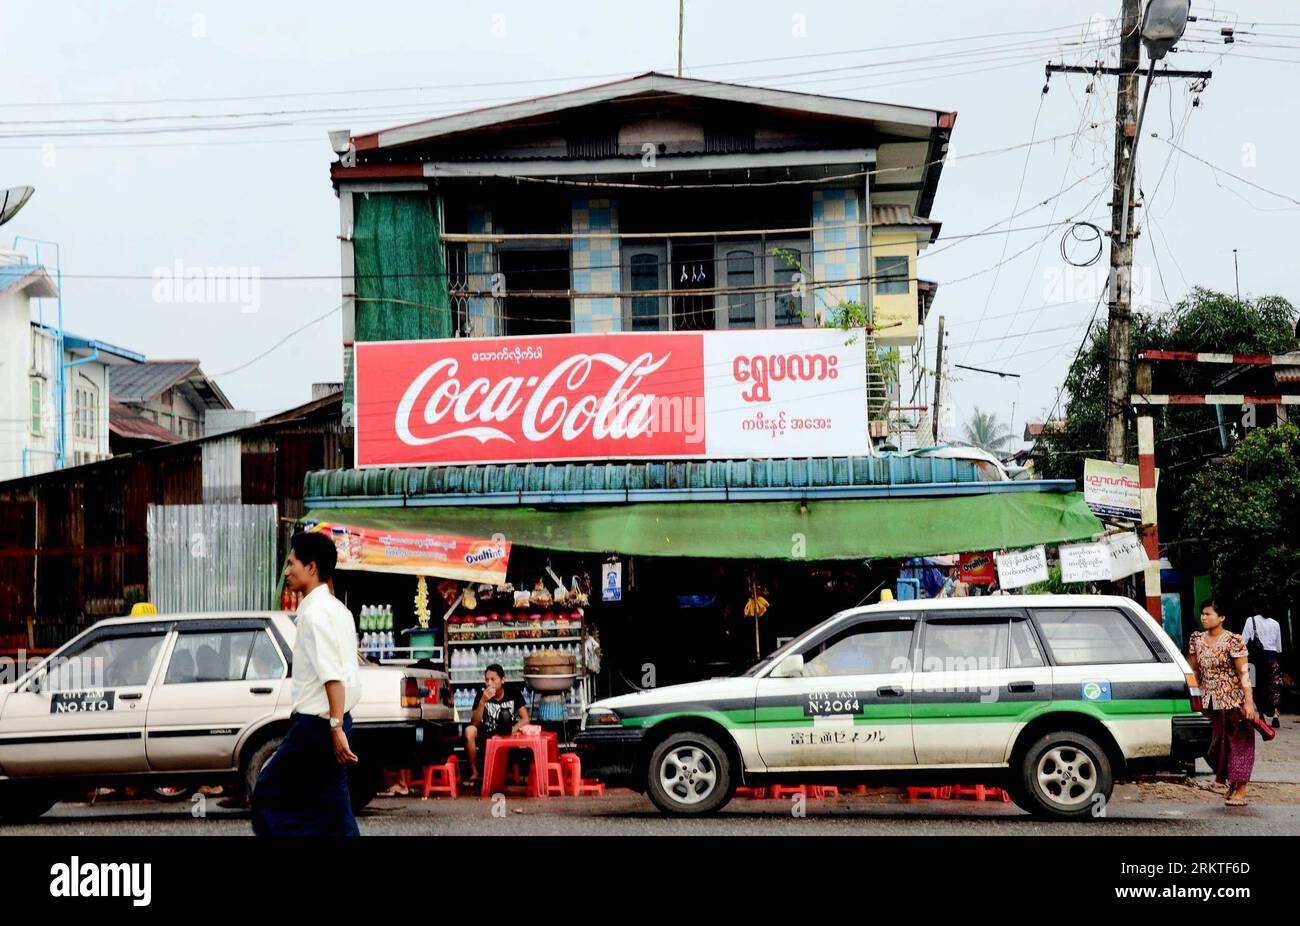 Bildnummer: 58463727 Datum: 12.09.2012 Copyright: imago/Xinhua (120912) -- YANGON, 12 settembre 2012 (Xinhua) -- una pubblicità di Coca-Cola si vede a Yangon, Myanmar, 12 settembre 2012. Coca-Cola ha riavviato la sua attività in Myanmar dopo più di 60 anni, collaborando con la società locale di bevande analcoliche Pinya Manufacturing. (Xinhua/U Aung) MYANMAR-YANGON-COCA-COLA-RETURN PUBLICATIONxNOTxINxCHN Wirtschaft Coca Cola x0x xmb Werbung CocaCola 2012 quer 58463727 Data 12 09 2012 Copyright Imago XINHUA Yangon 12 settembre 2012 XINHUA alla pubblicità di Coca Cola IS Lakes in Yangon Myanmar 12 settembre 2012 C. Foto Stock